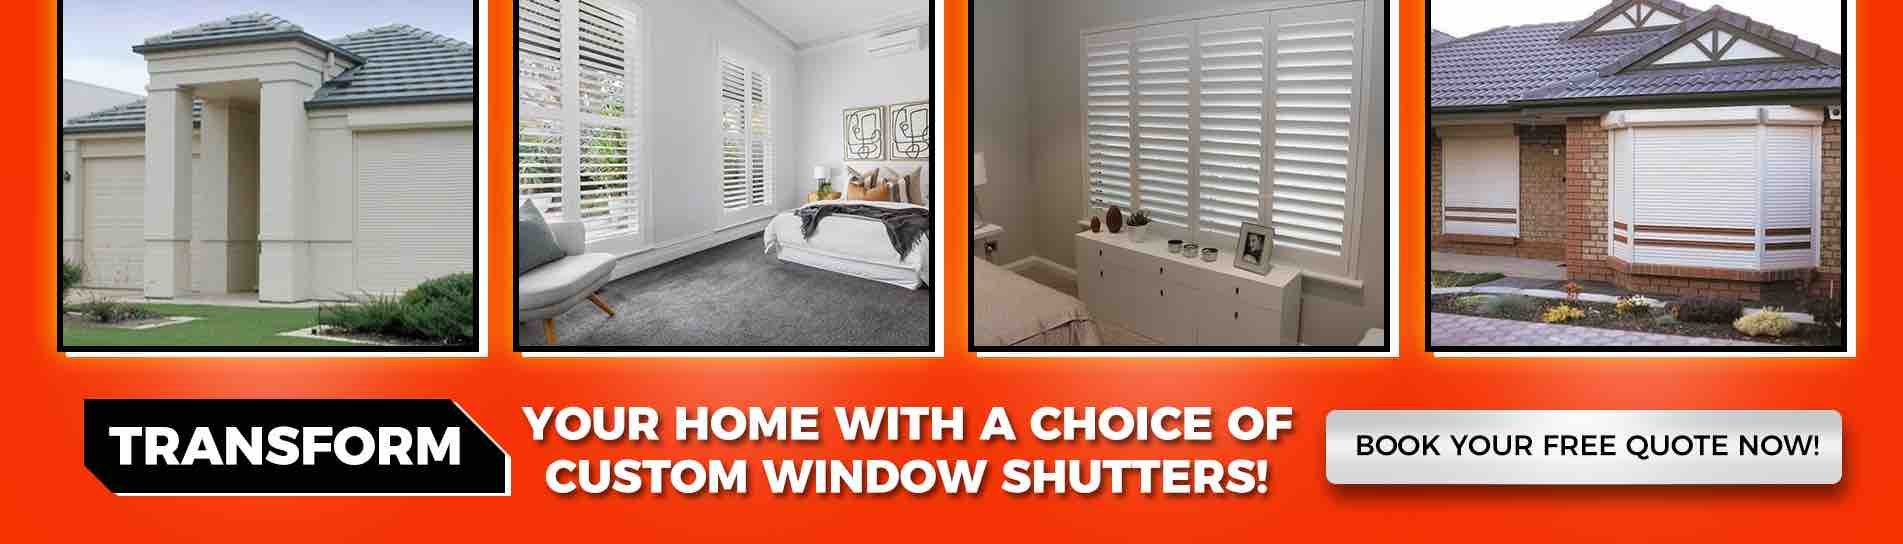 Window shutter styles